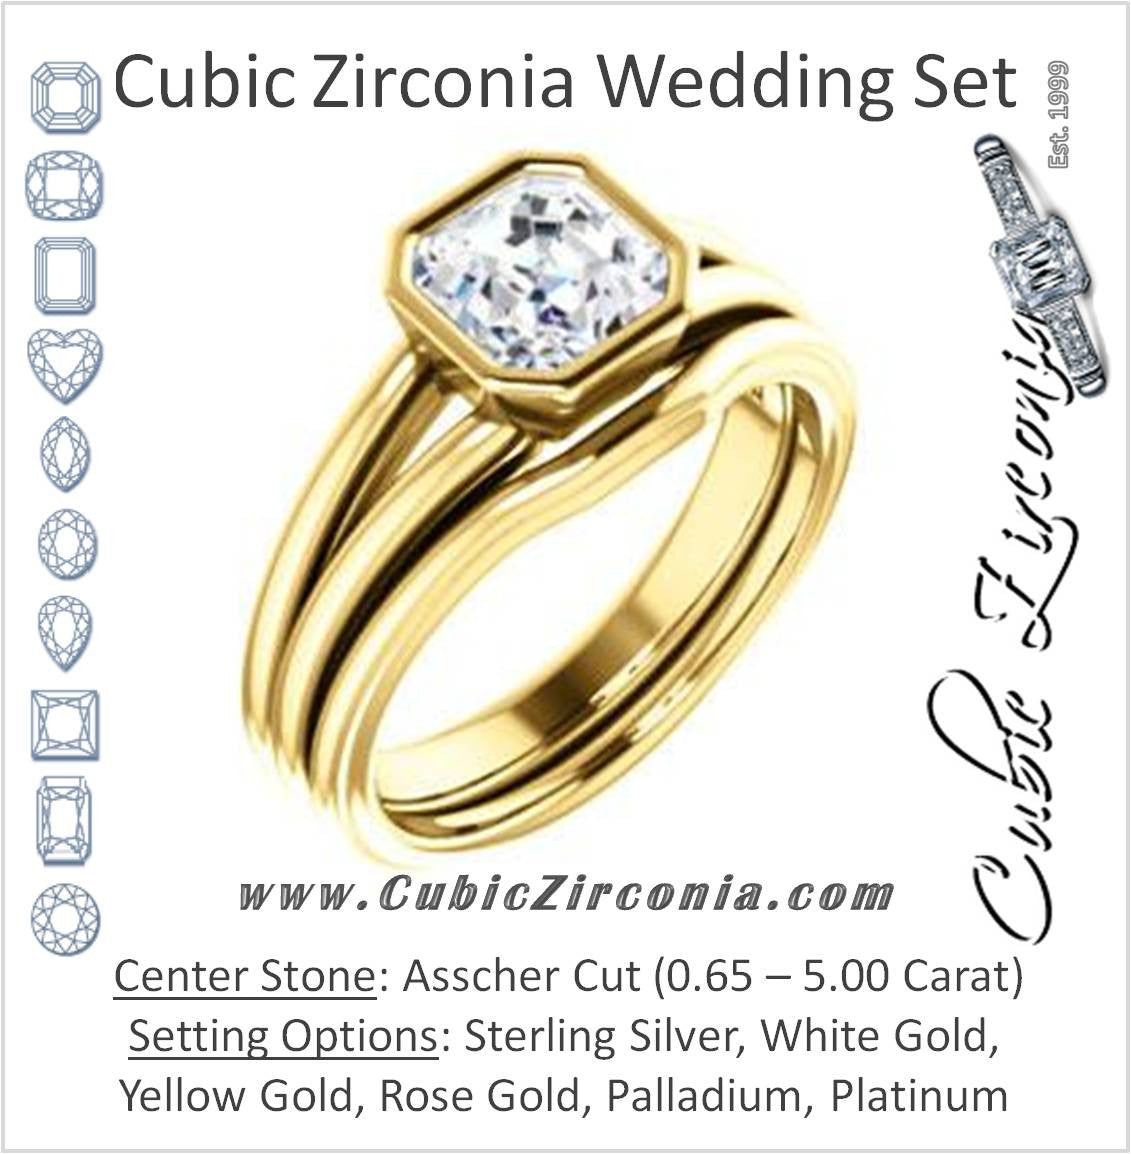 CZ Wedding Set, featuring The Bernadine engagement ring (Customizable Bezel-set Asscher Cut with V-Split Band)